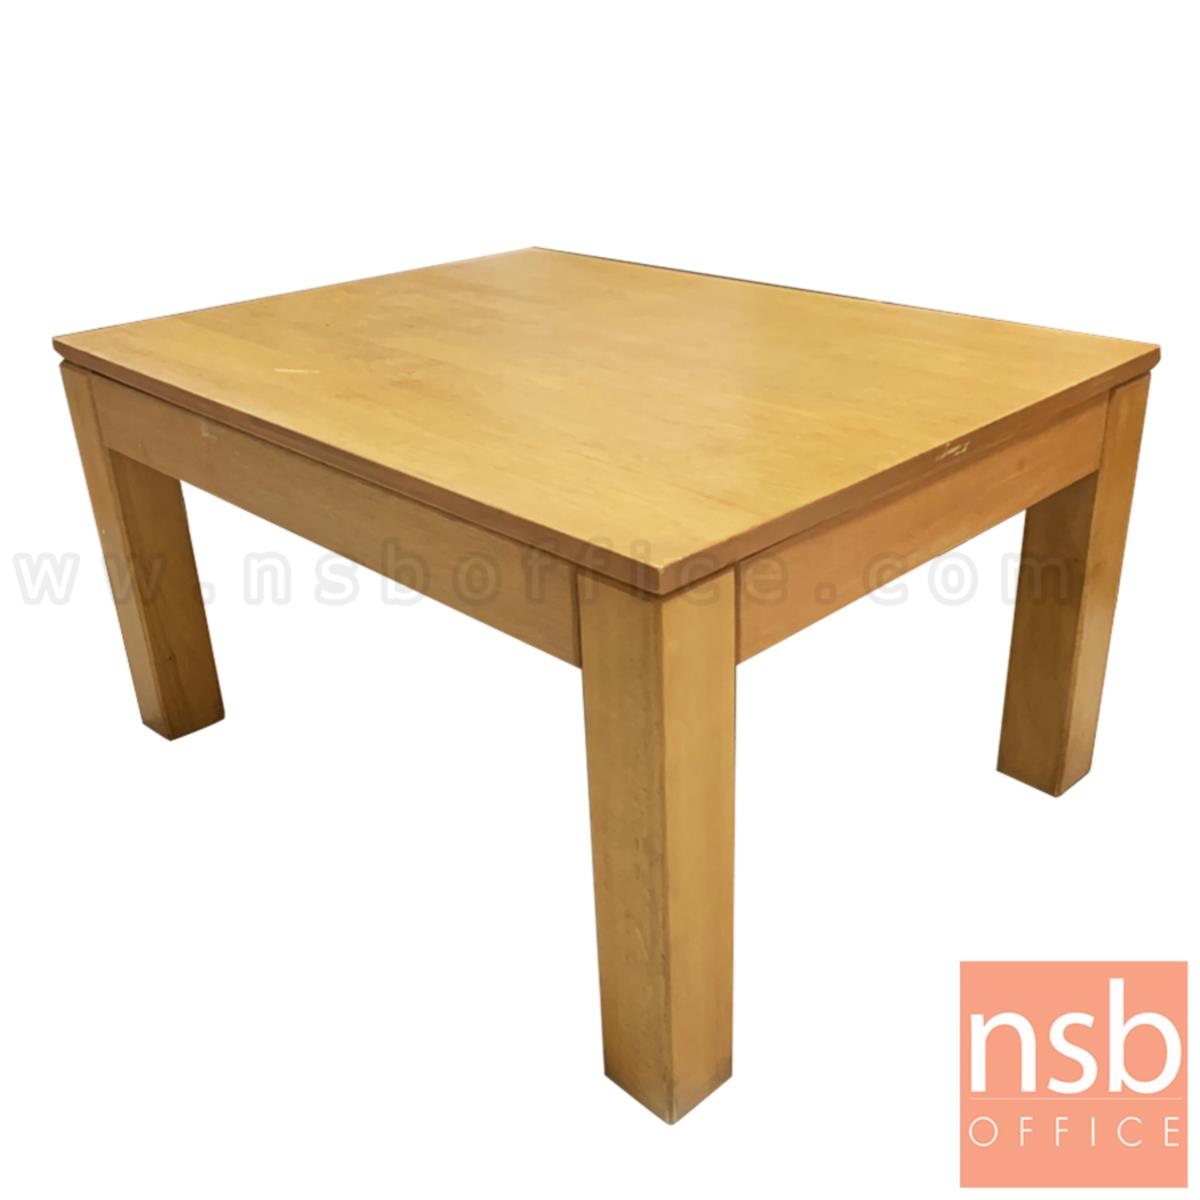 B13A261:โต๊ะกลางไม้ยางพาราล้วน  ขนาด 90W*60D*38H cm 